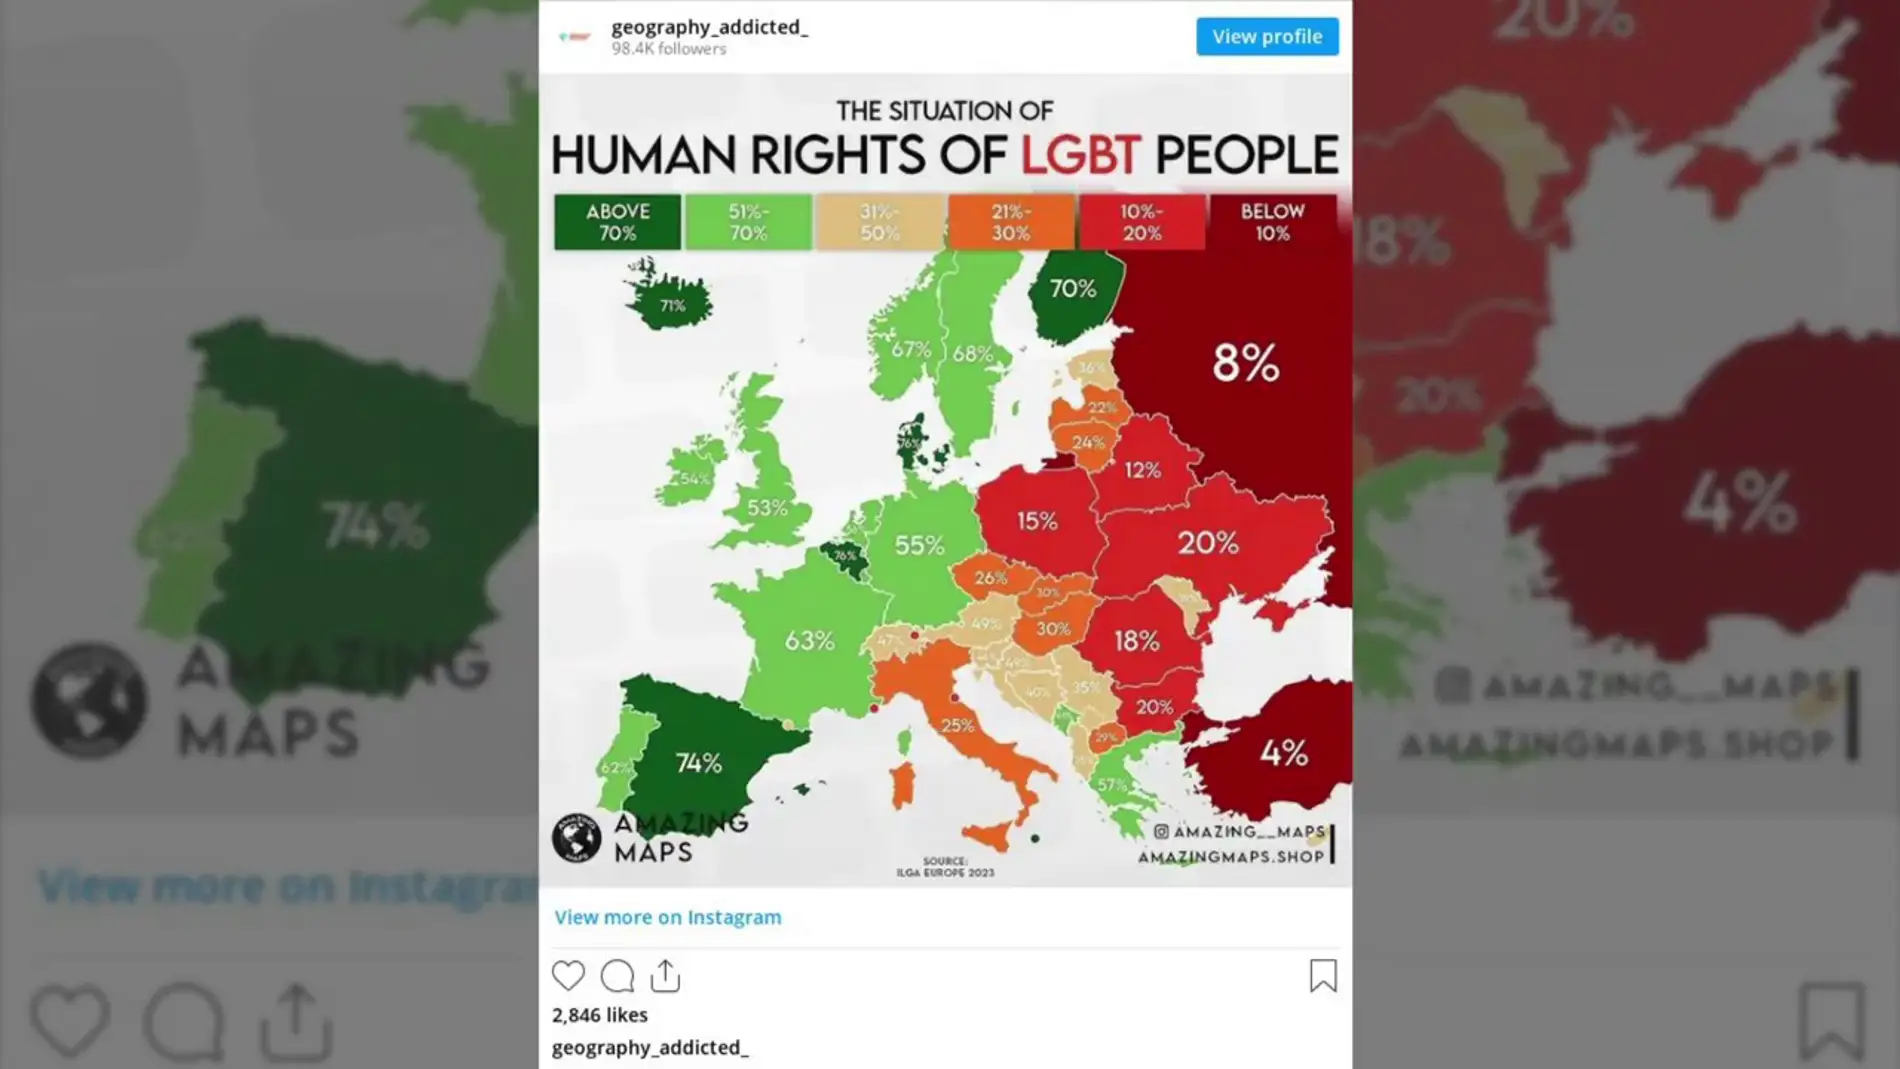 El mapa de Europa con la situación de los derechos humanos de las personas LGTBI